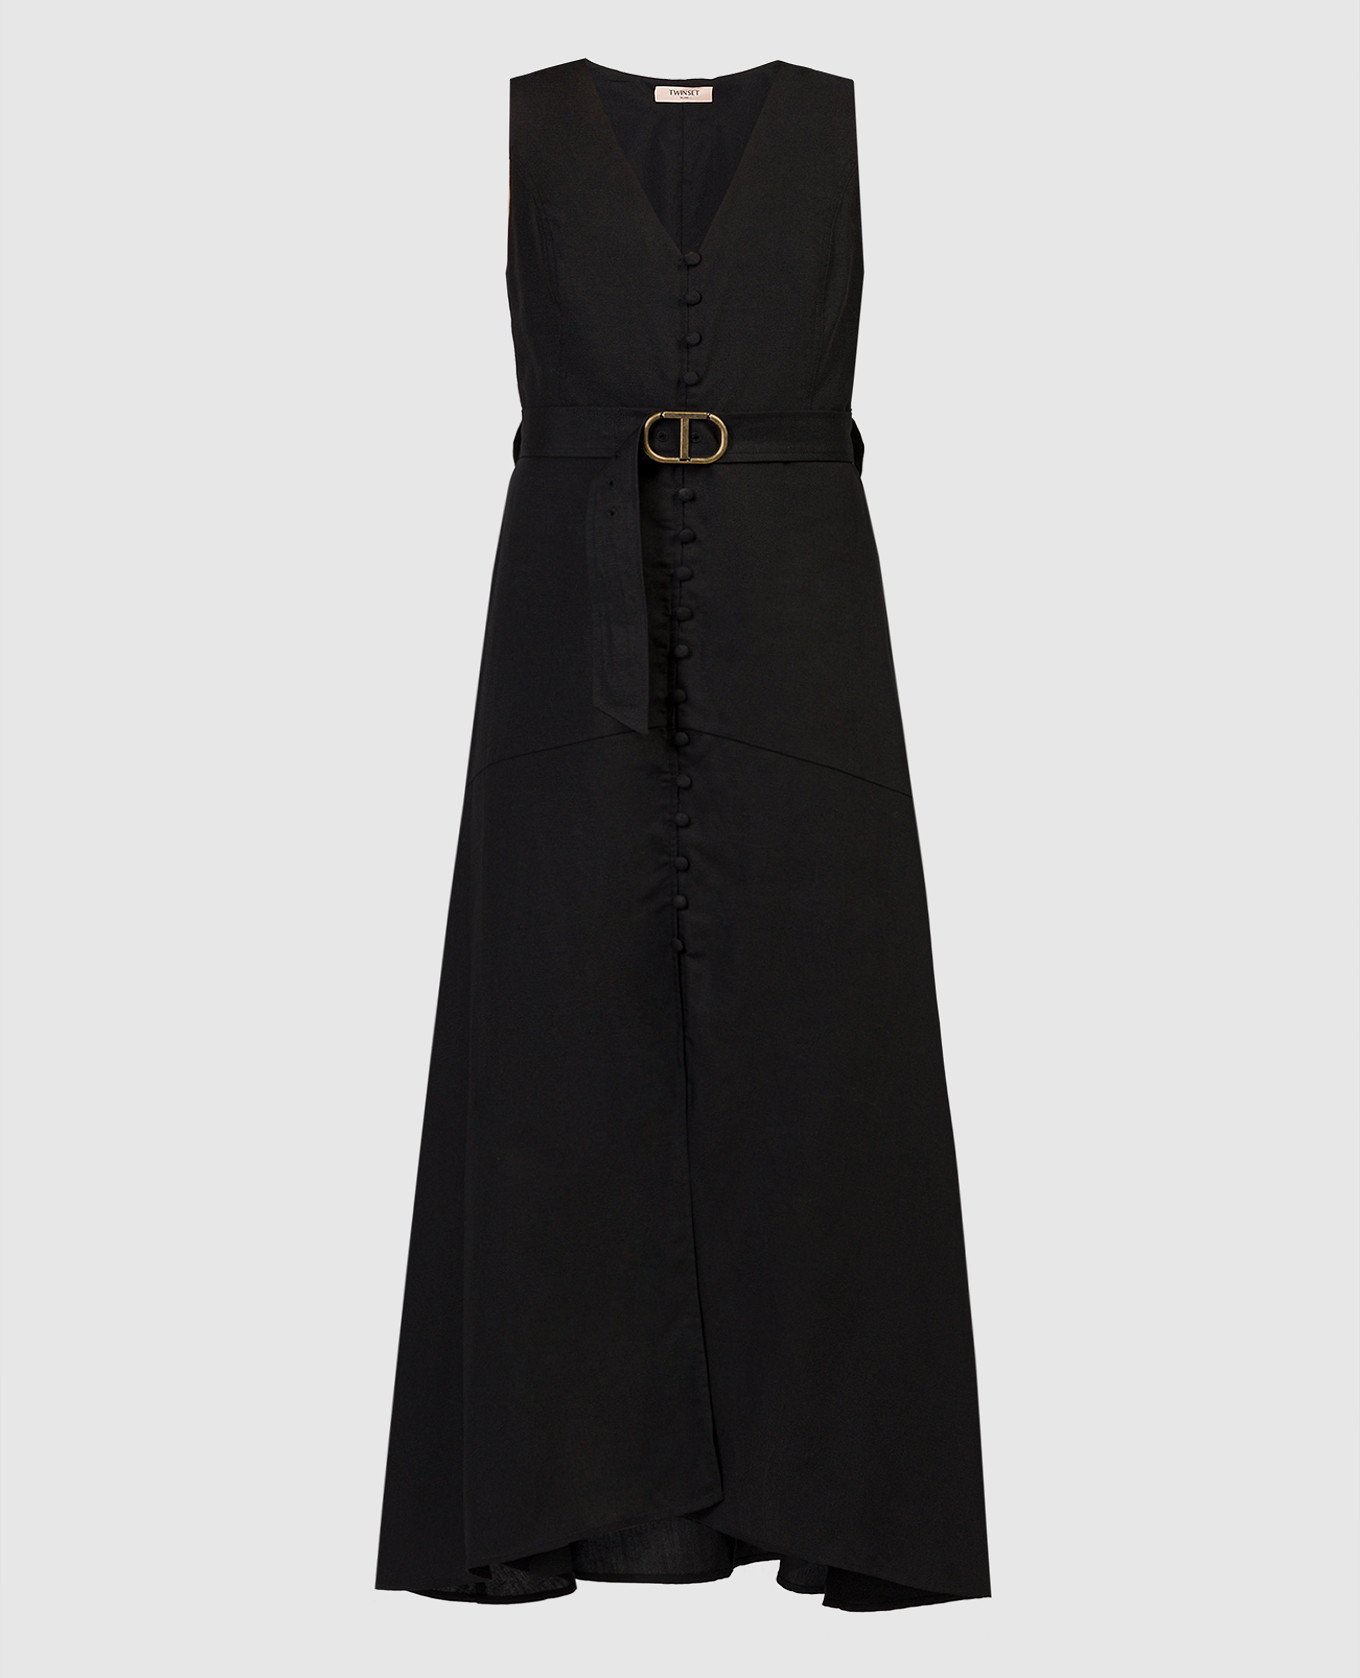 Black linen dress with belt